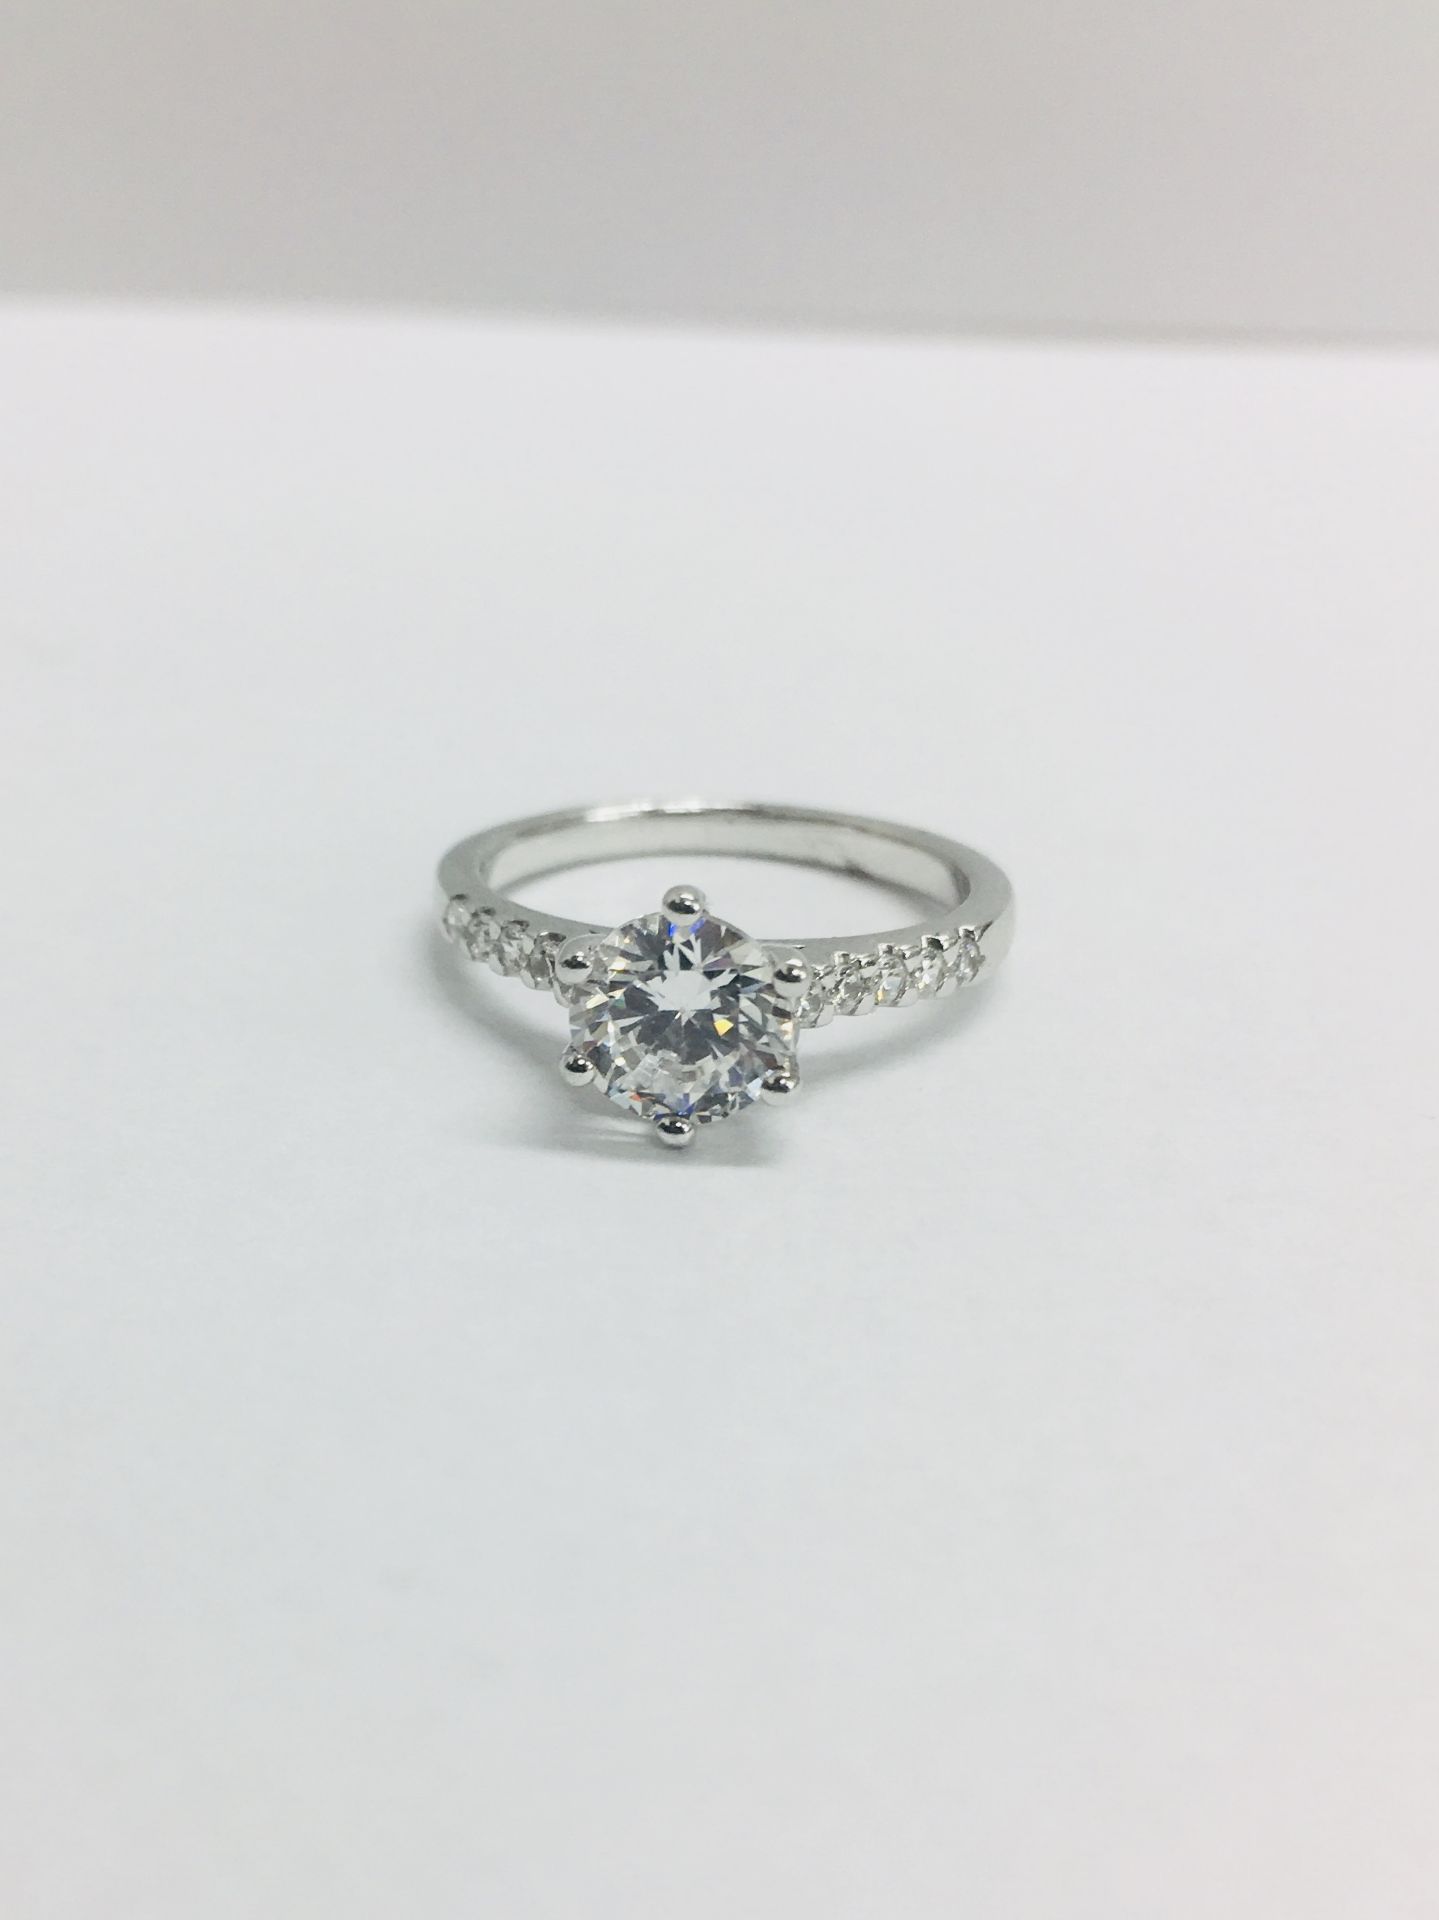 Platinum diamond solitaire ring,0.50ct brilliant cut diamond vs clarity D colour,platinum diamond - Image 2 of 6